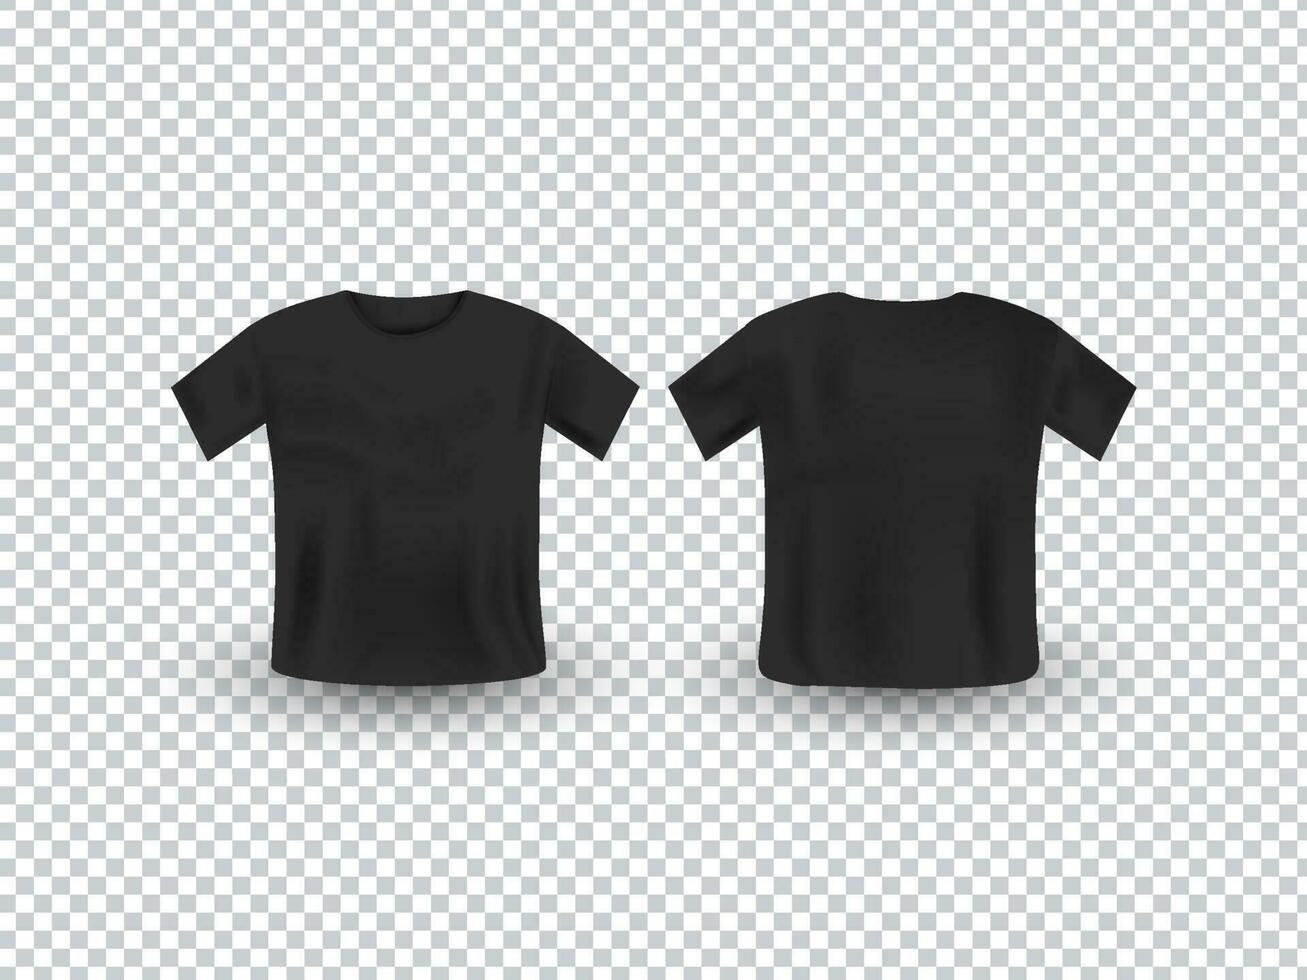 Black Realistic T-Shirt Mockup. 23796031 Vector Art at Vecteezy